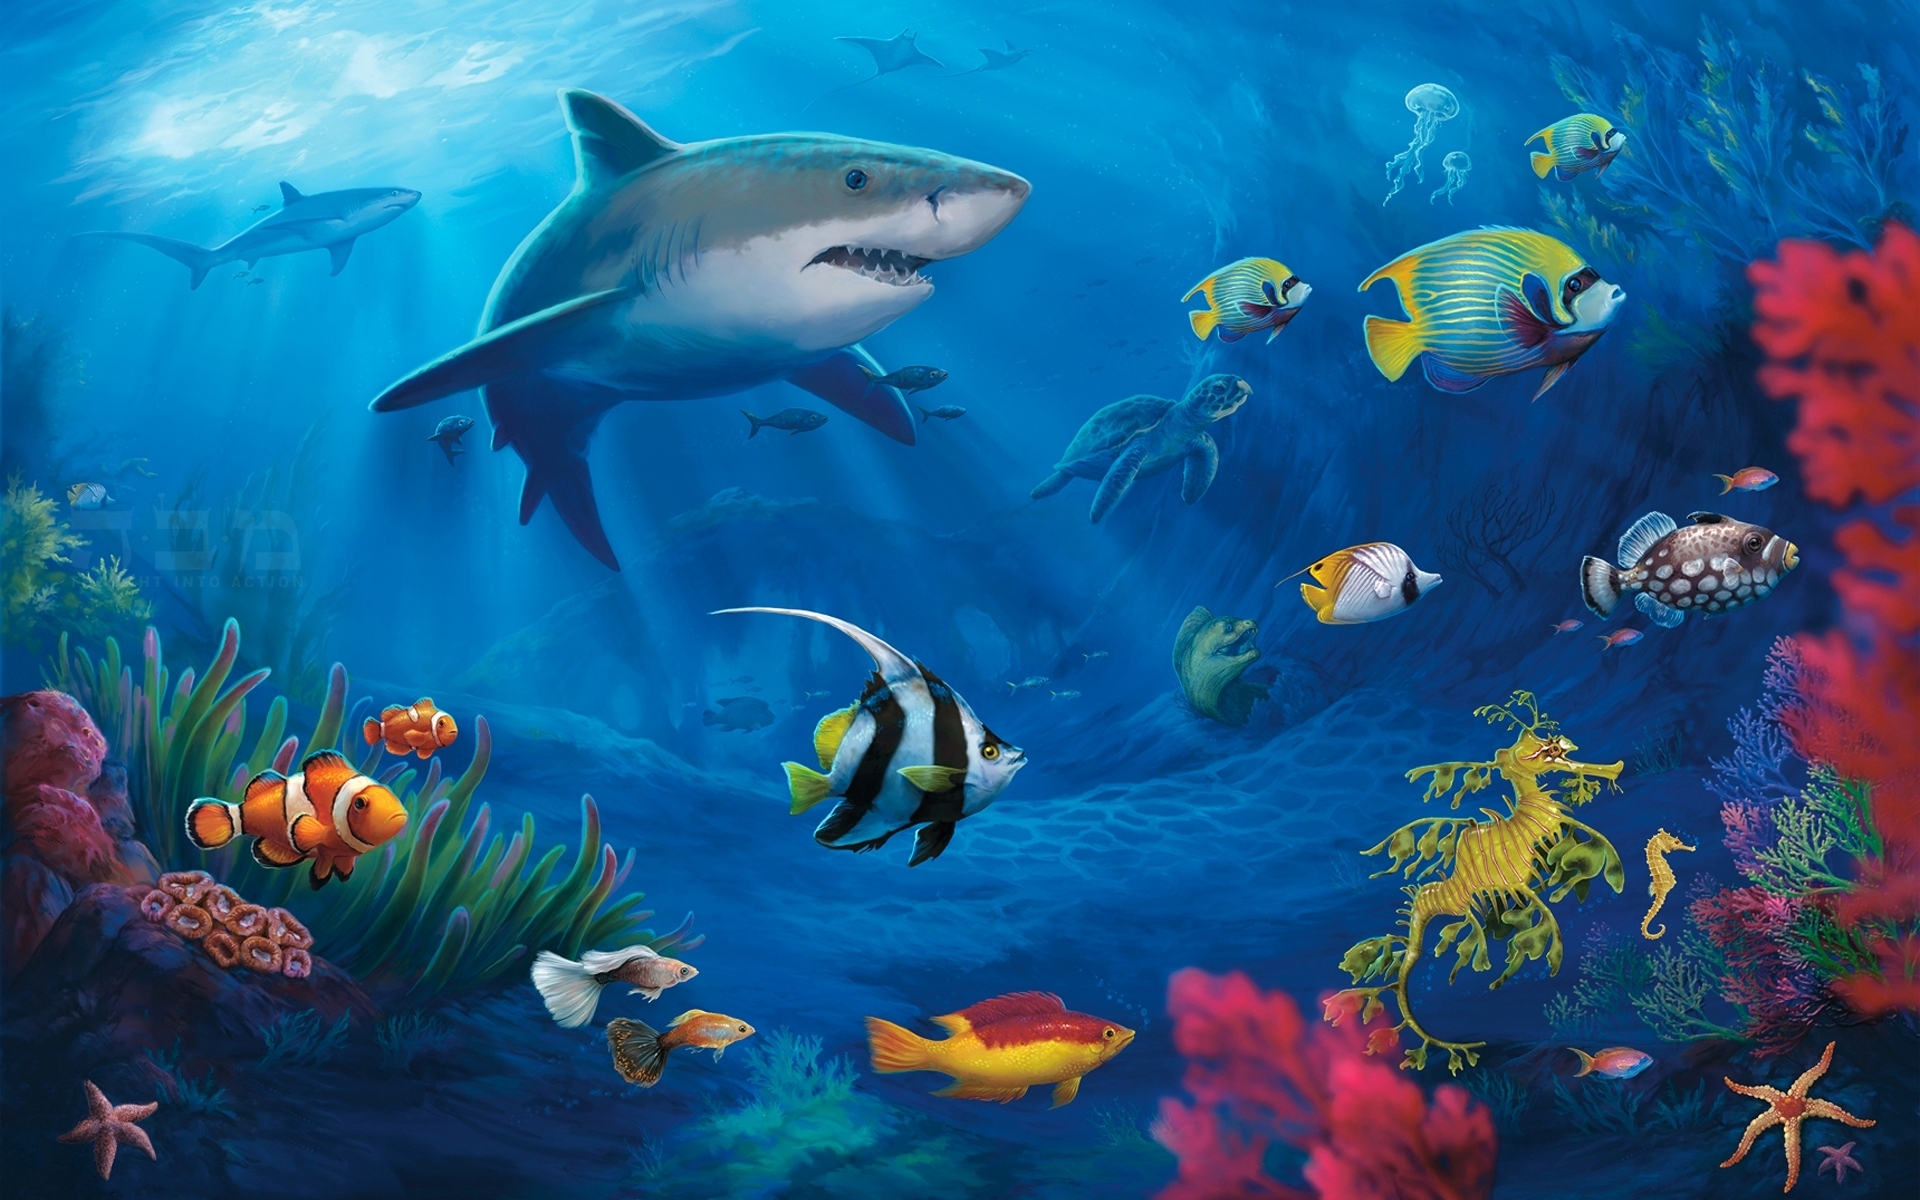 fish wallpaper underwater download - HD Desktop Wallpapers ...
